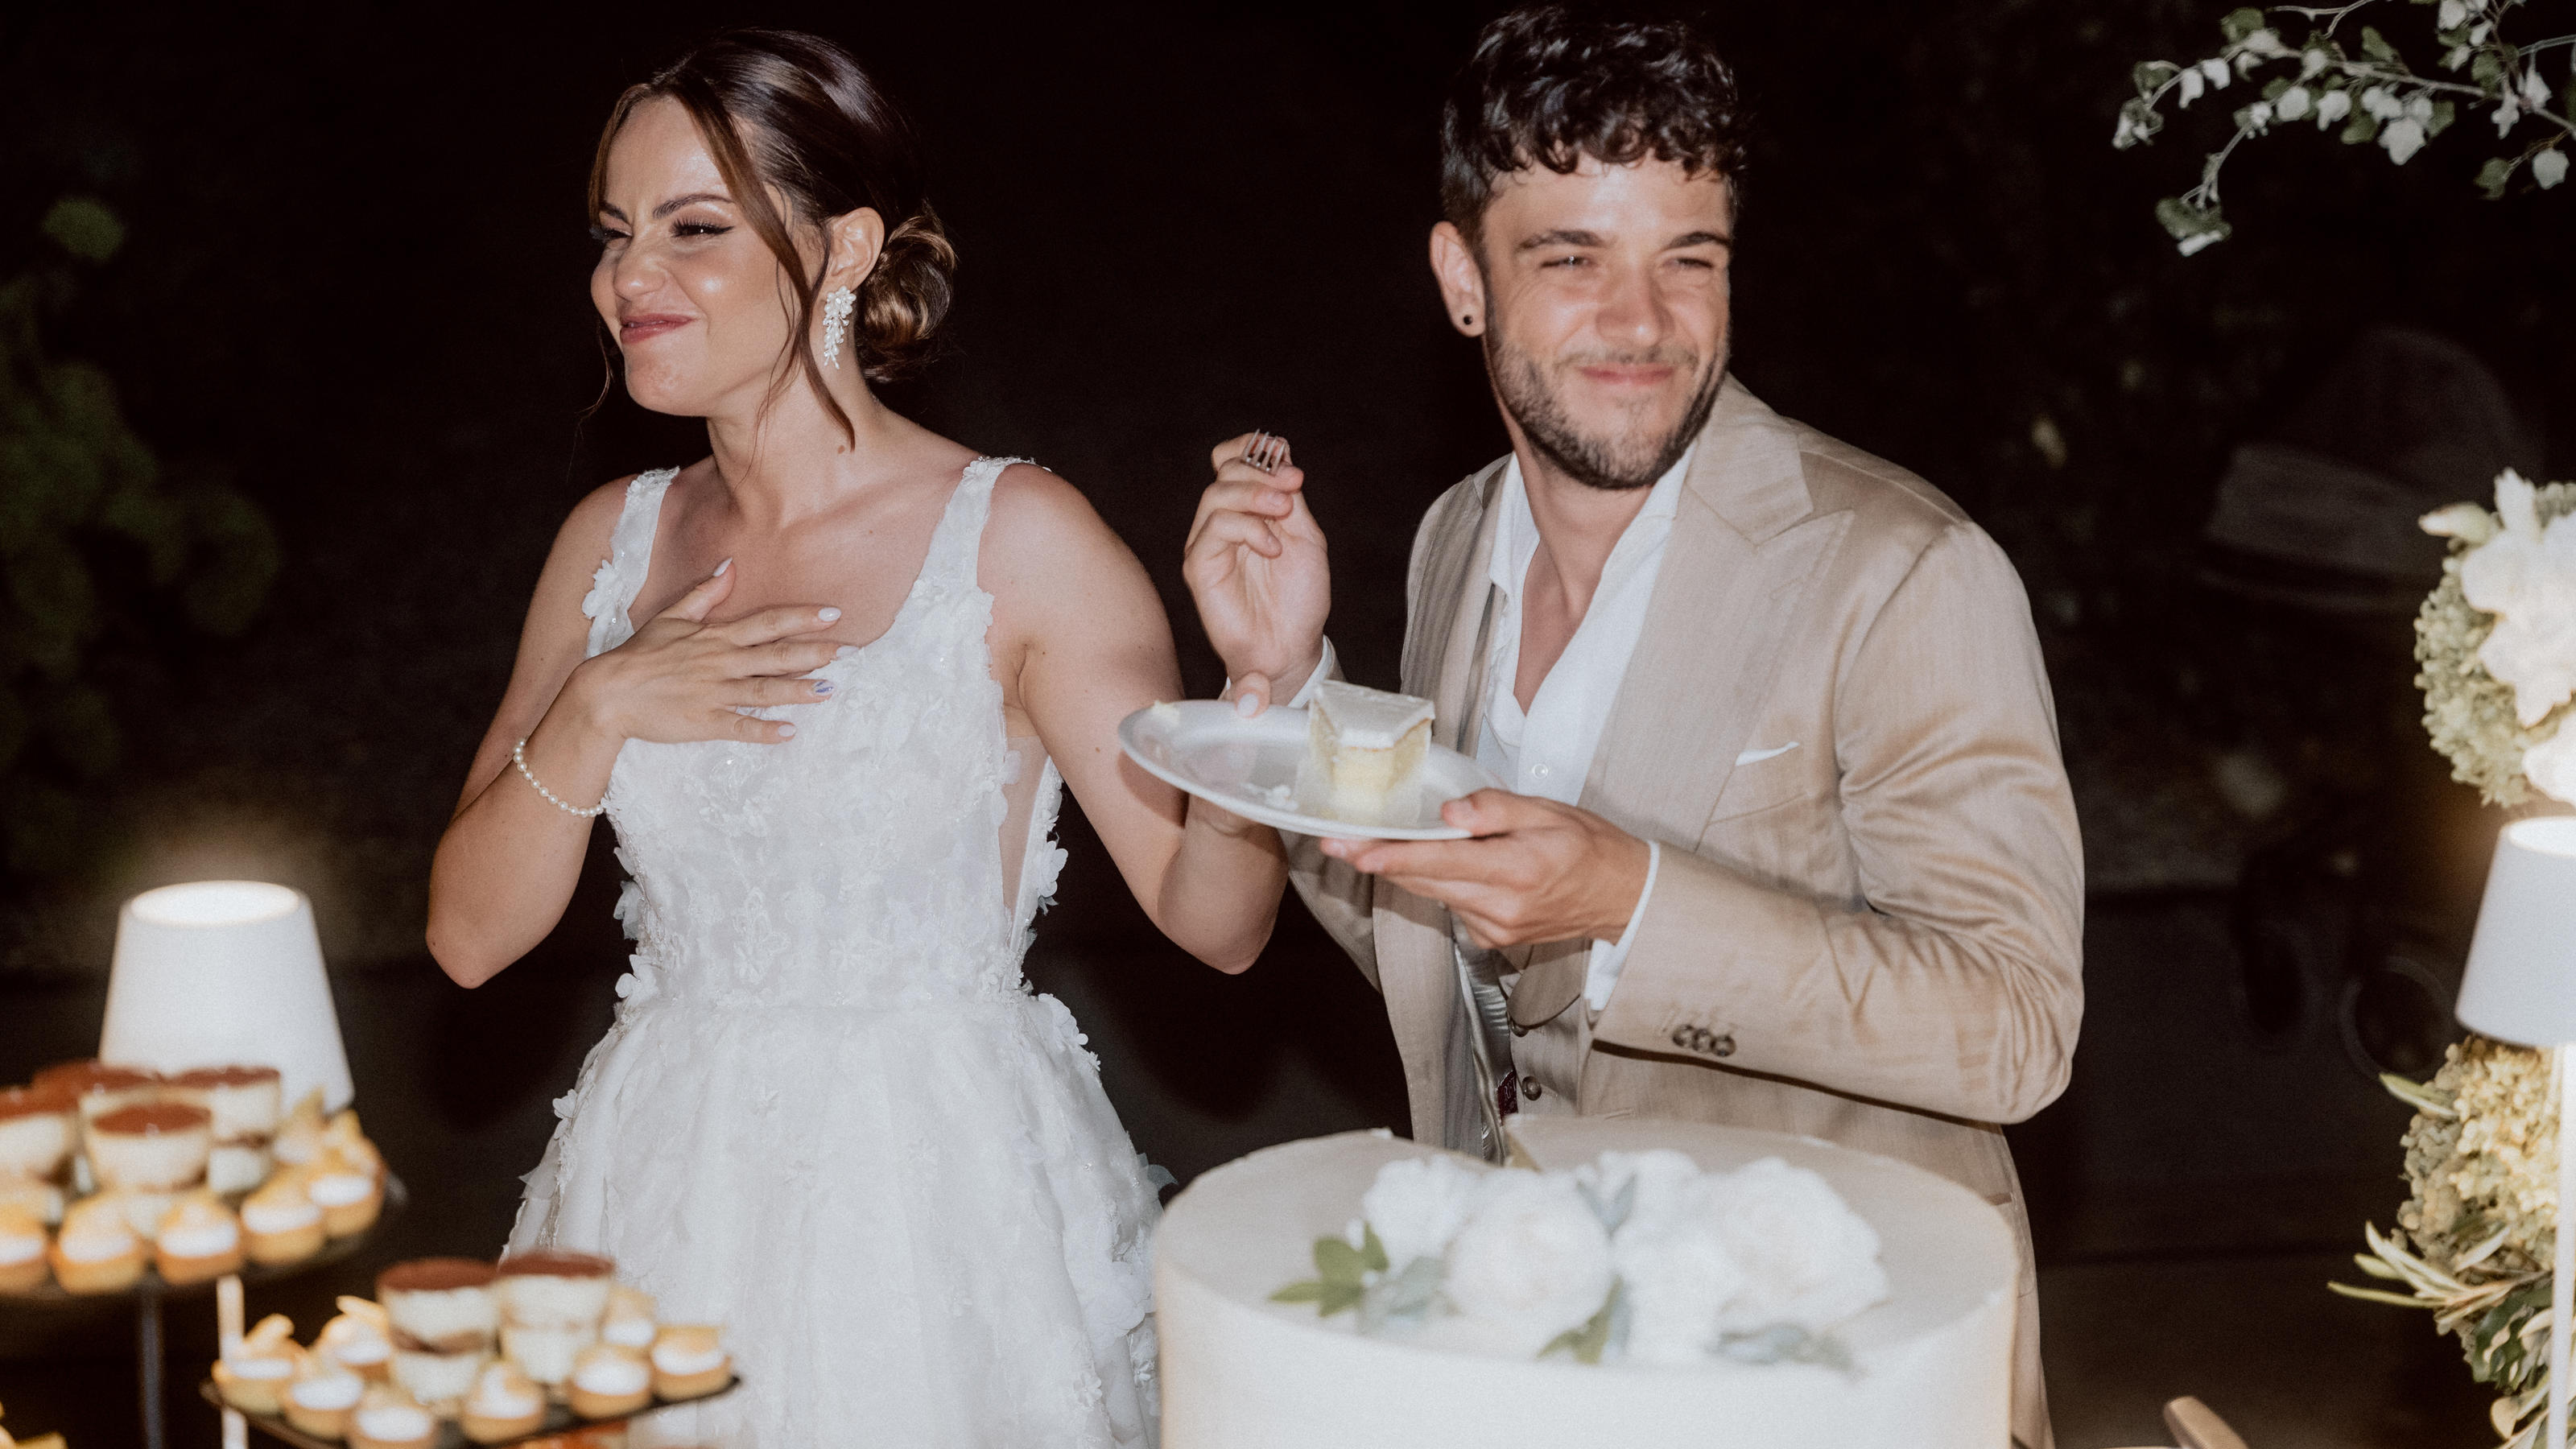 Christina Loft e Luca Hani si stanno chiaramente godendo la loro torta nuziale